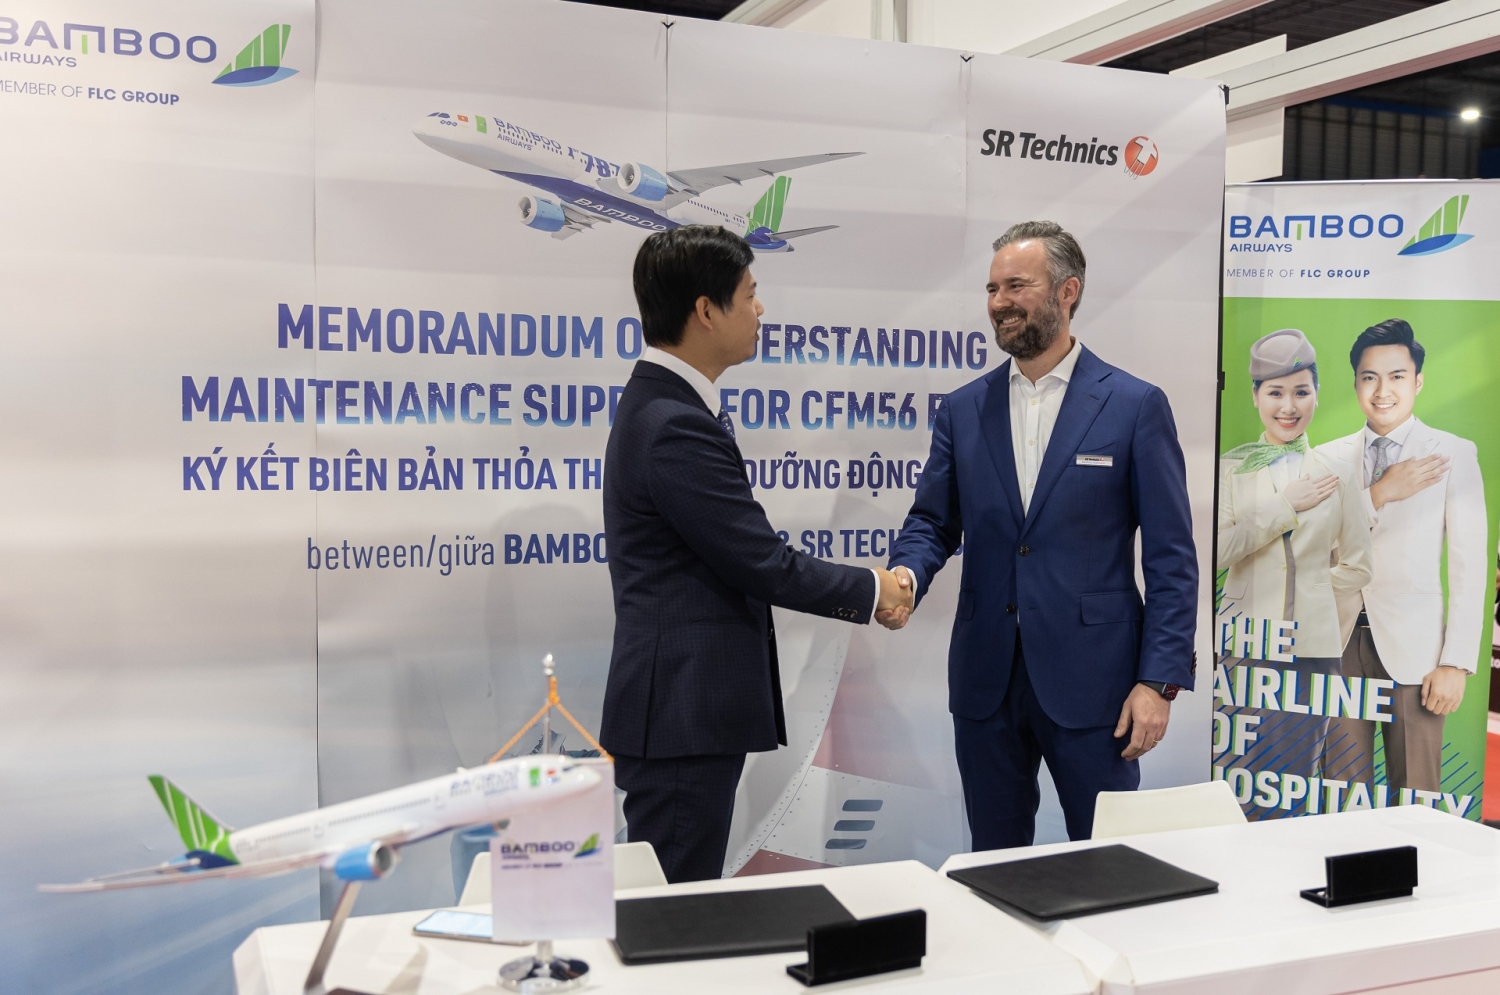 Bamboo Airways ký thỏa thuận động cơ trị giá 60 triệu USD với SR Technics, thảo luận mua Boeing 777X tại Singapore Airshow